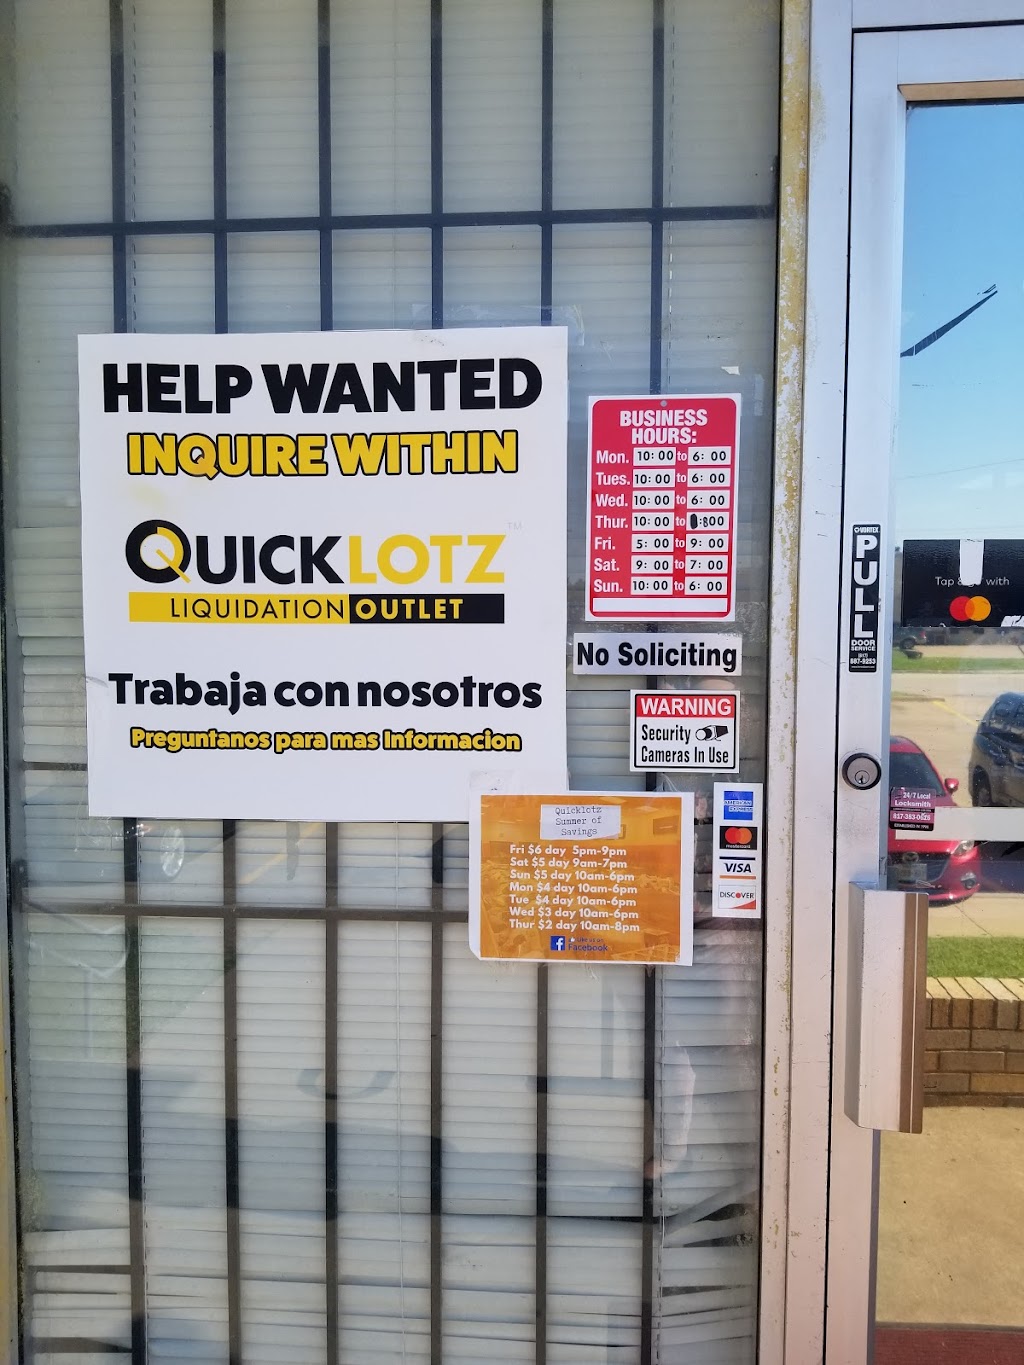 Quicklotz Liquidations - Arlington | 3447 Dalworth St, Arlington, TX 76011 | Phone: (817) 856-2660